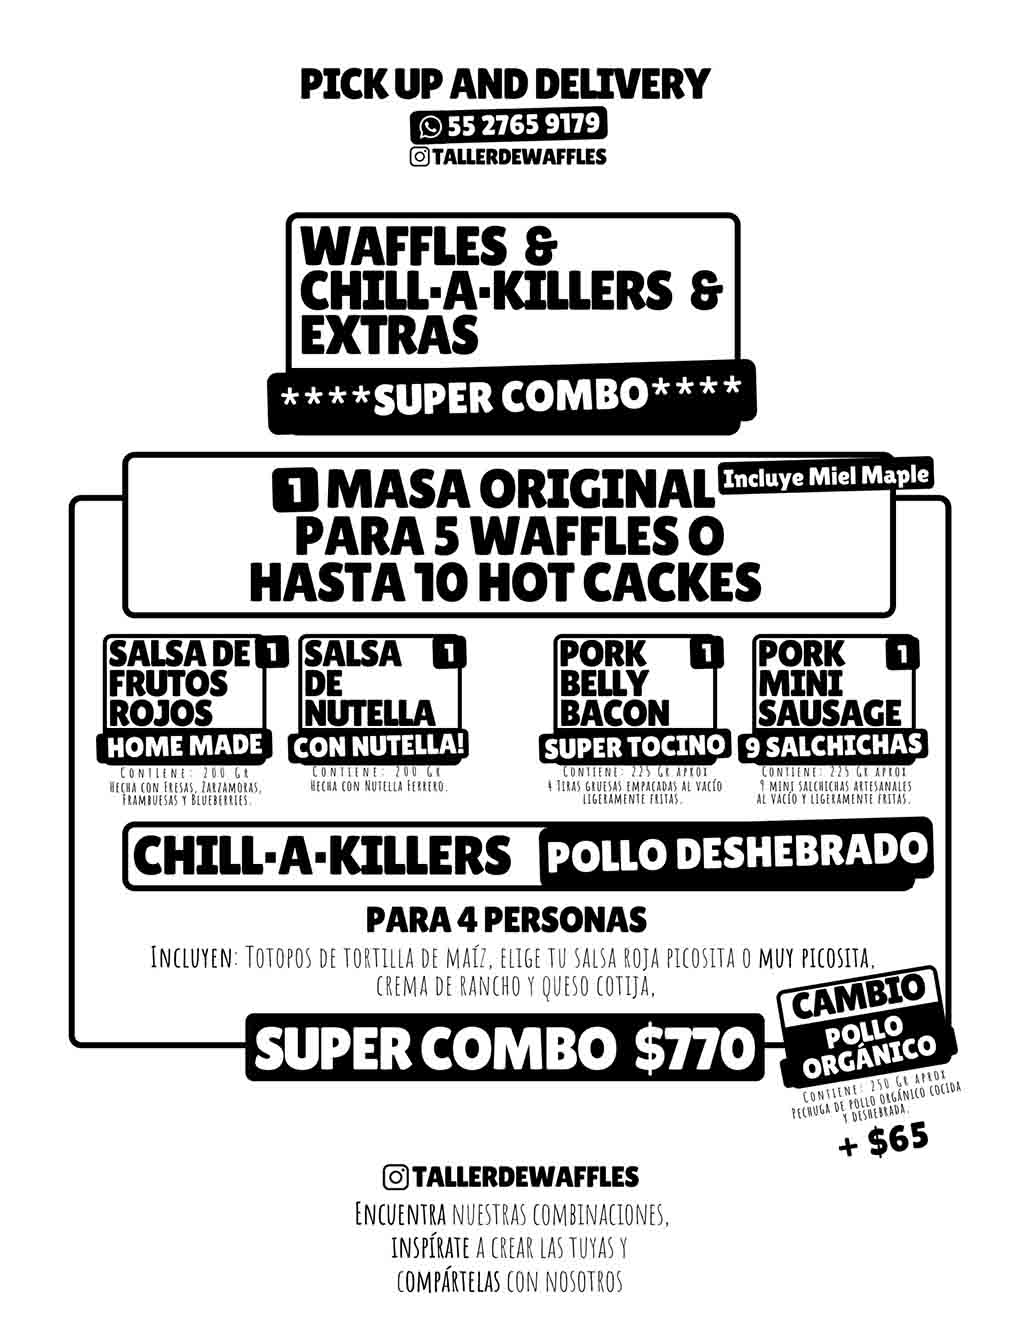 Taller de Waffles: paquetes para preparar hot cakes y chilaquiles 3